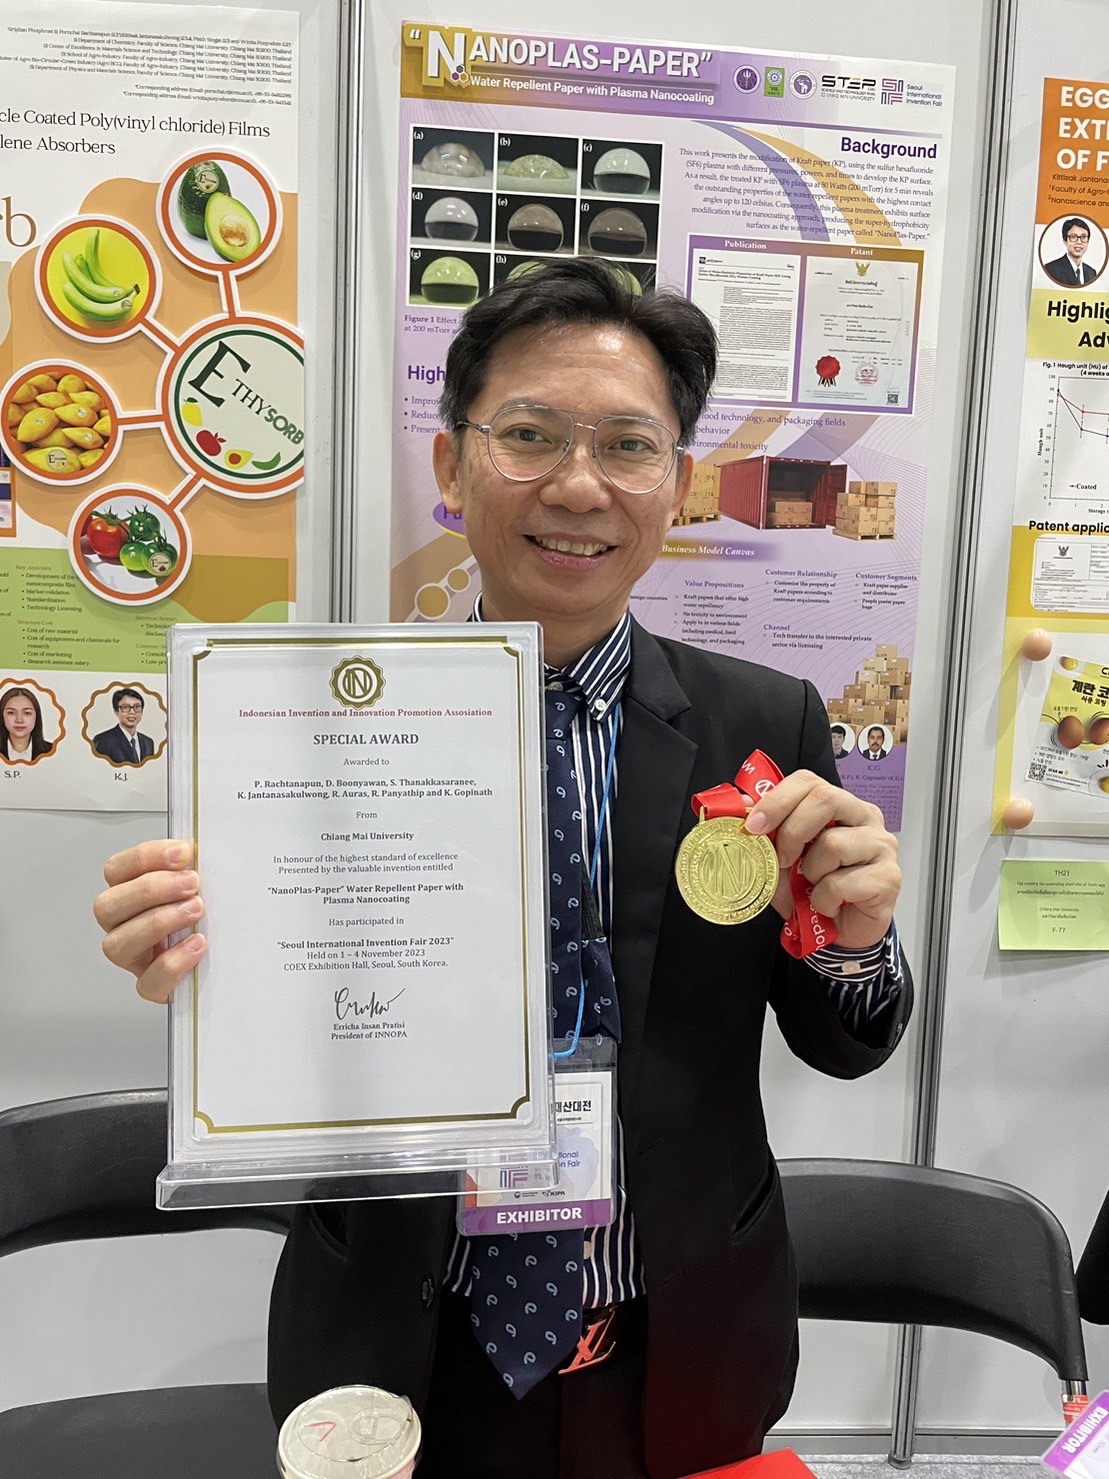 คณาจารย์ คณะอุตสาหกรรมเกษตร มช. คว้า 6 รางวัล จาก 4 ผลงาน ในงาน Seoul International Invention Fair ณ กรุงโซล ประเทศเกาหลีใต้